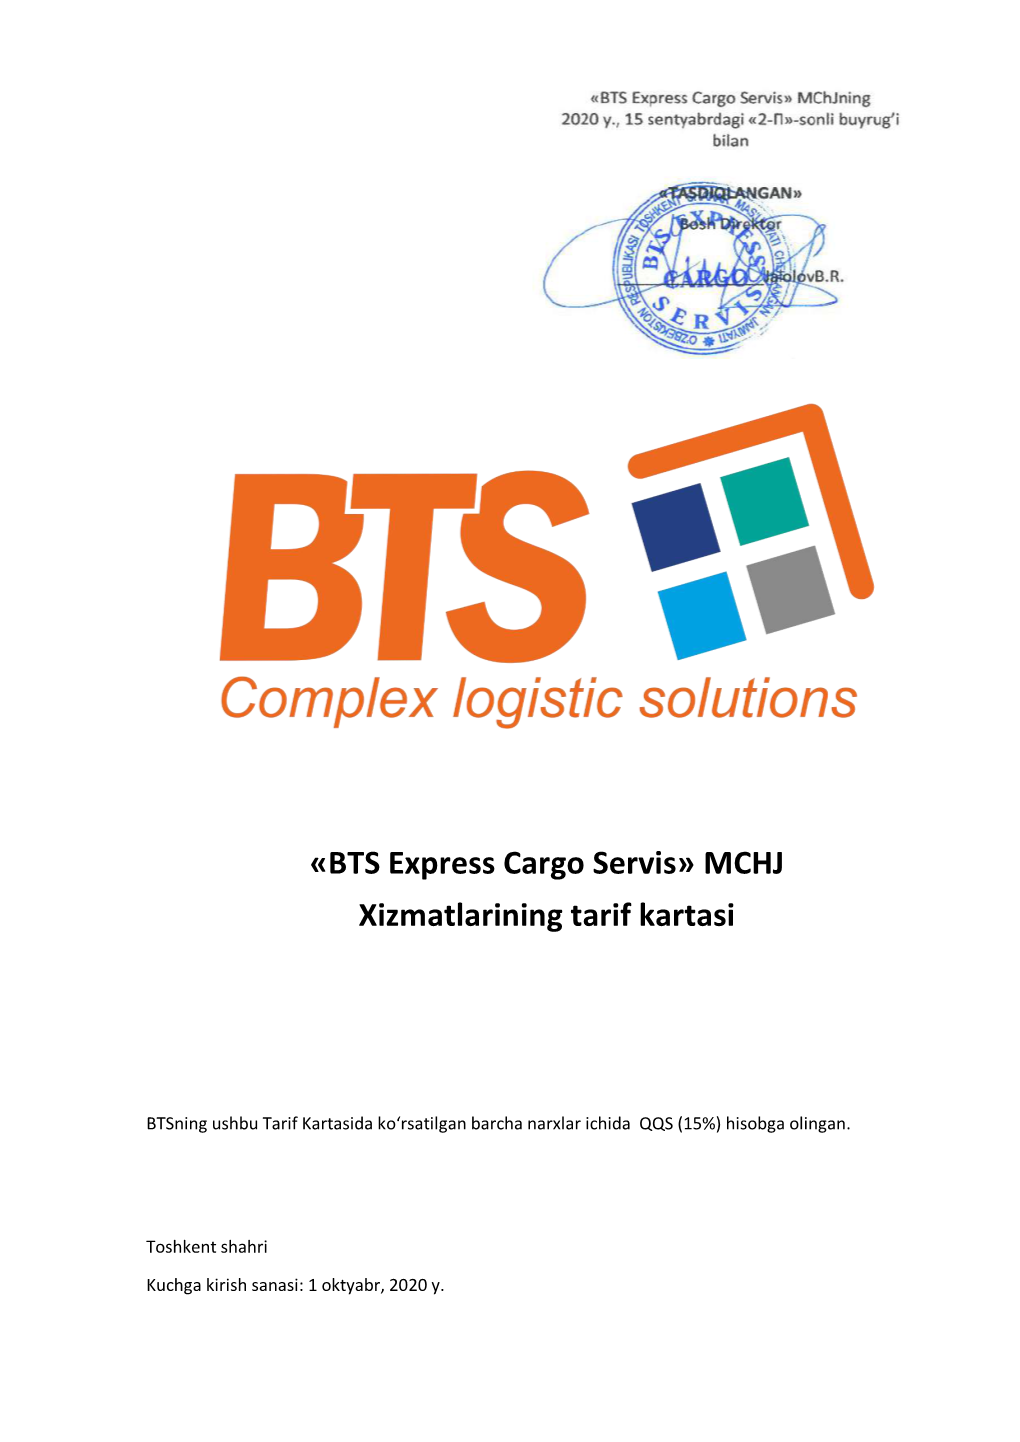 «BTS Express Cargo Servis» MCHJ Xizmatlarining Tarif Kartasi